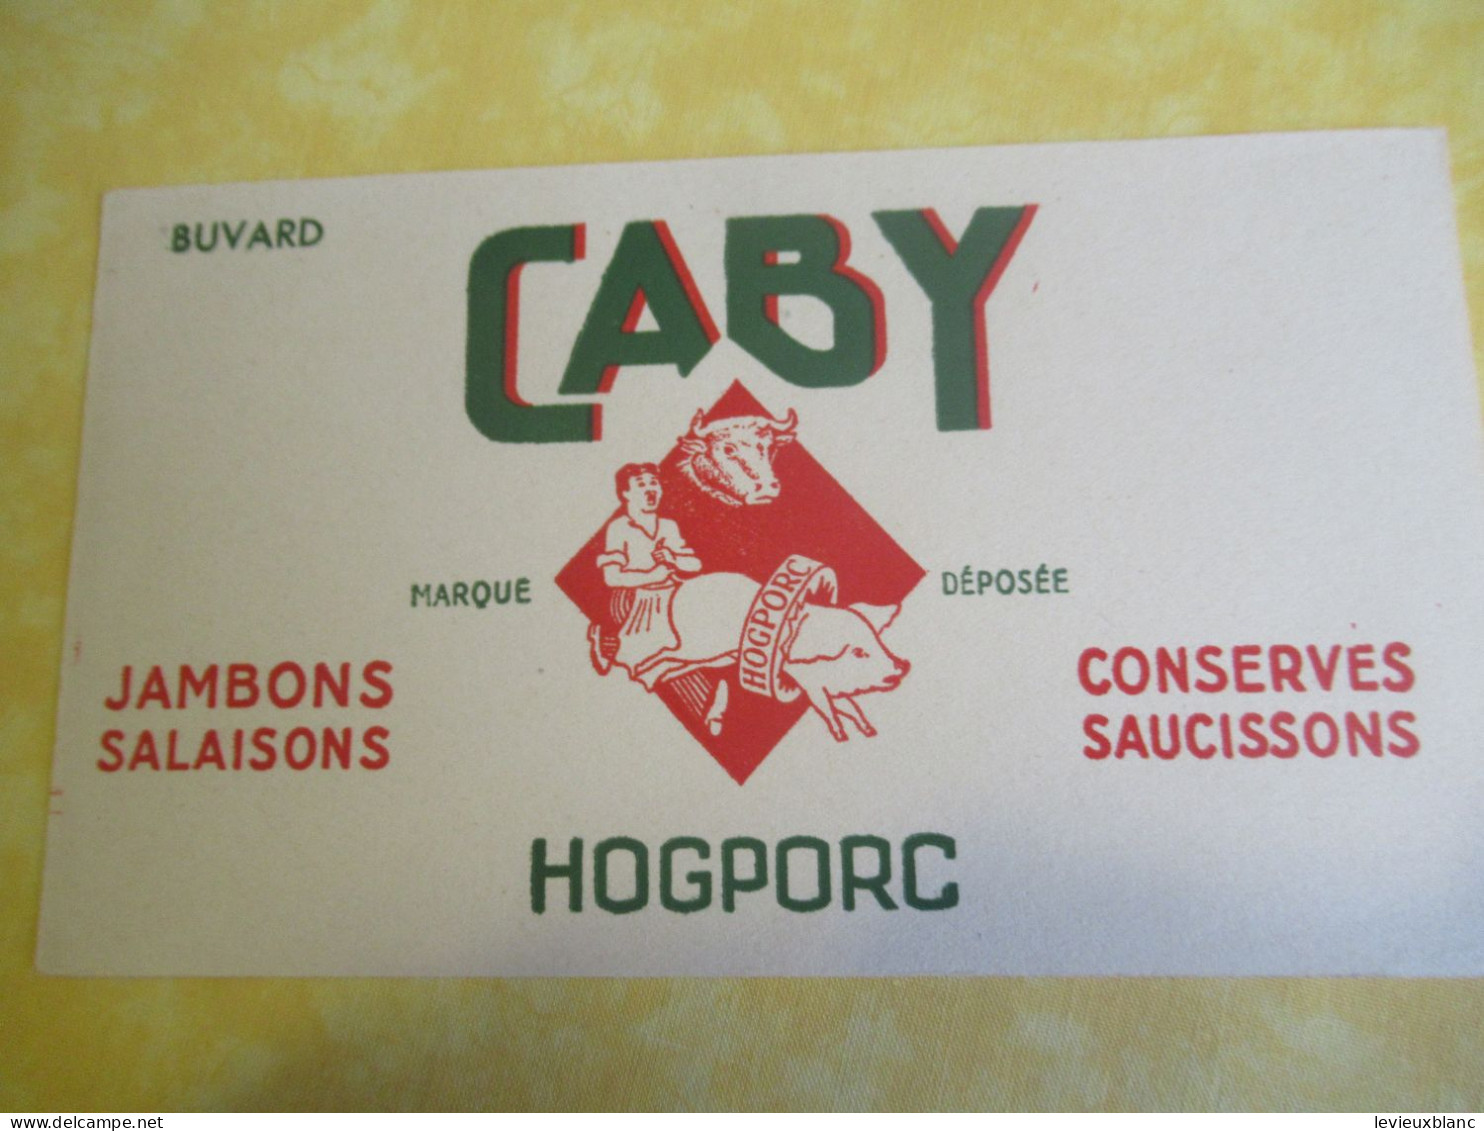 Buvard Ancien/Conserves CABY /Jambons-Salaisons-Conserves-Saucisson/ HOGPORC/Vers 1950-1960 BUV685 - Alimentaire